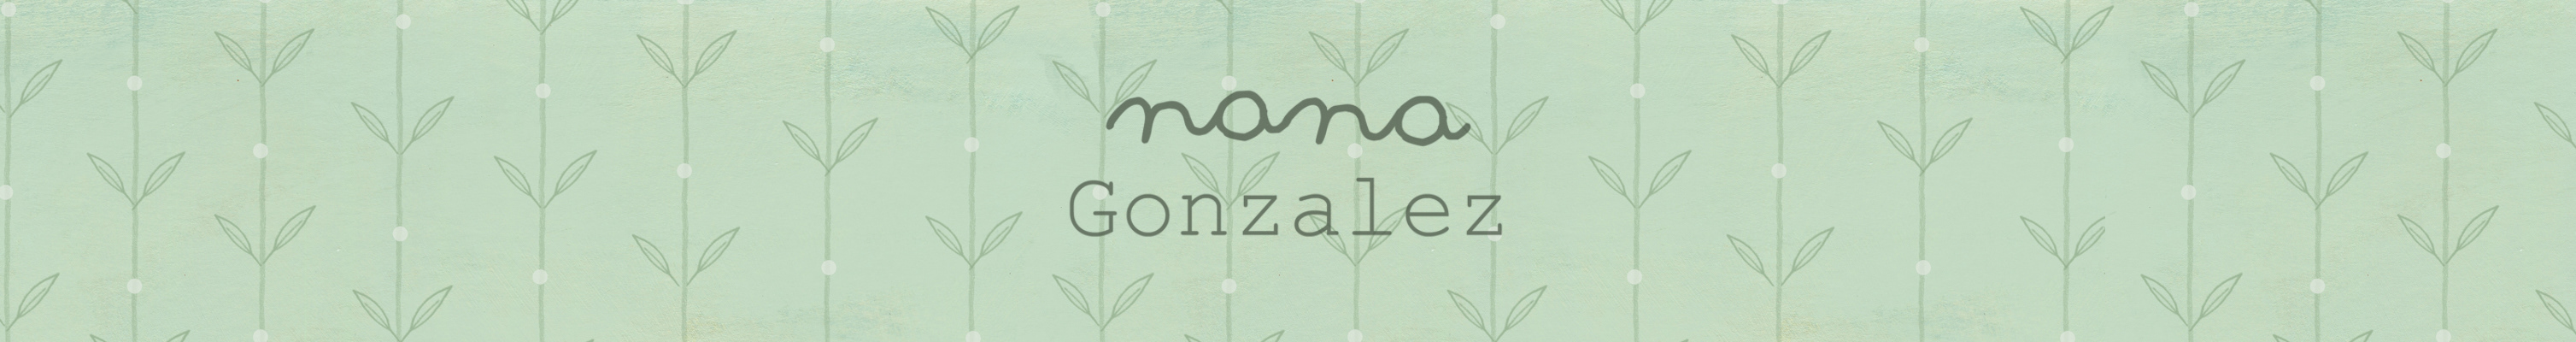 Nana Gonzalez's profile banner